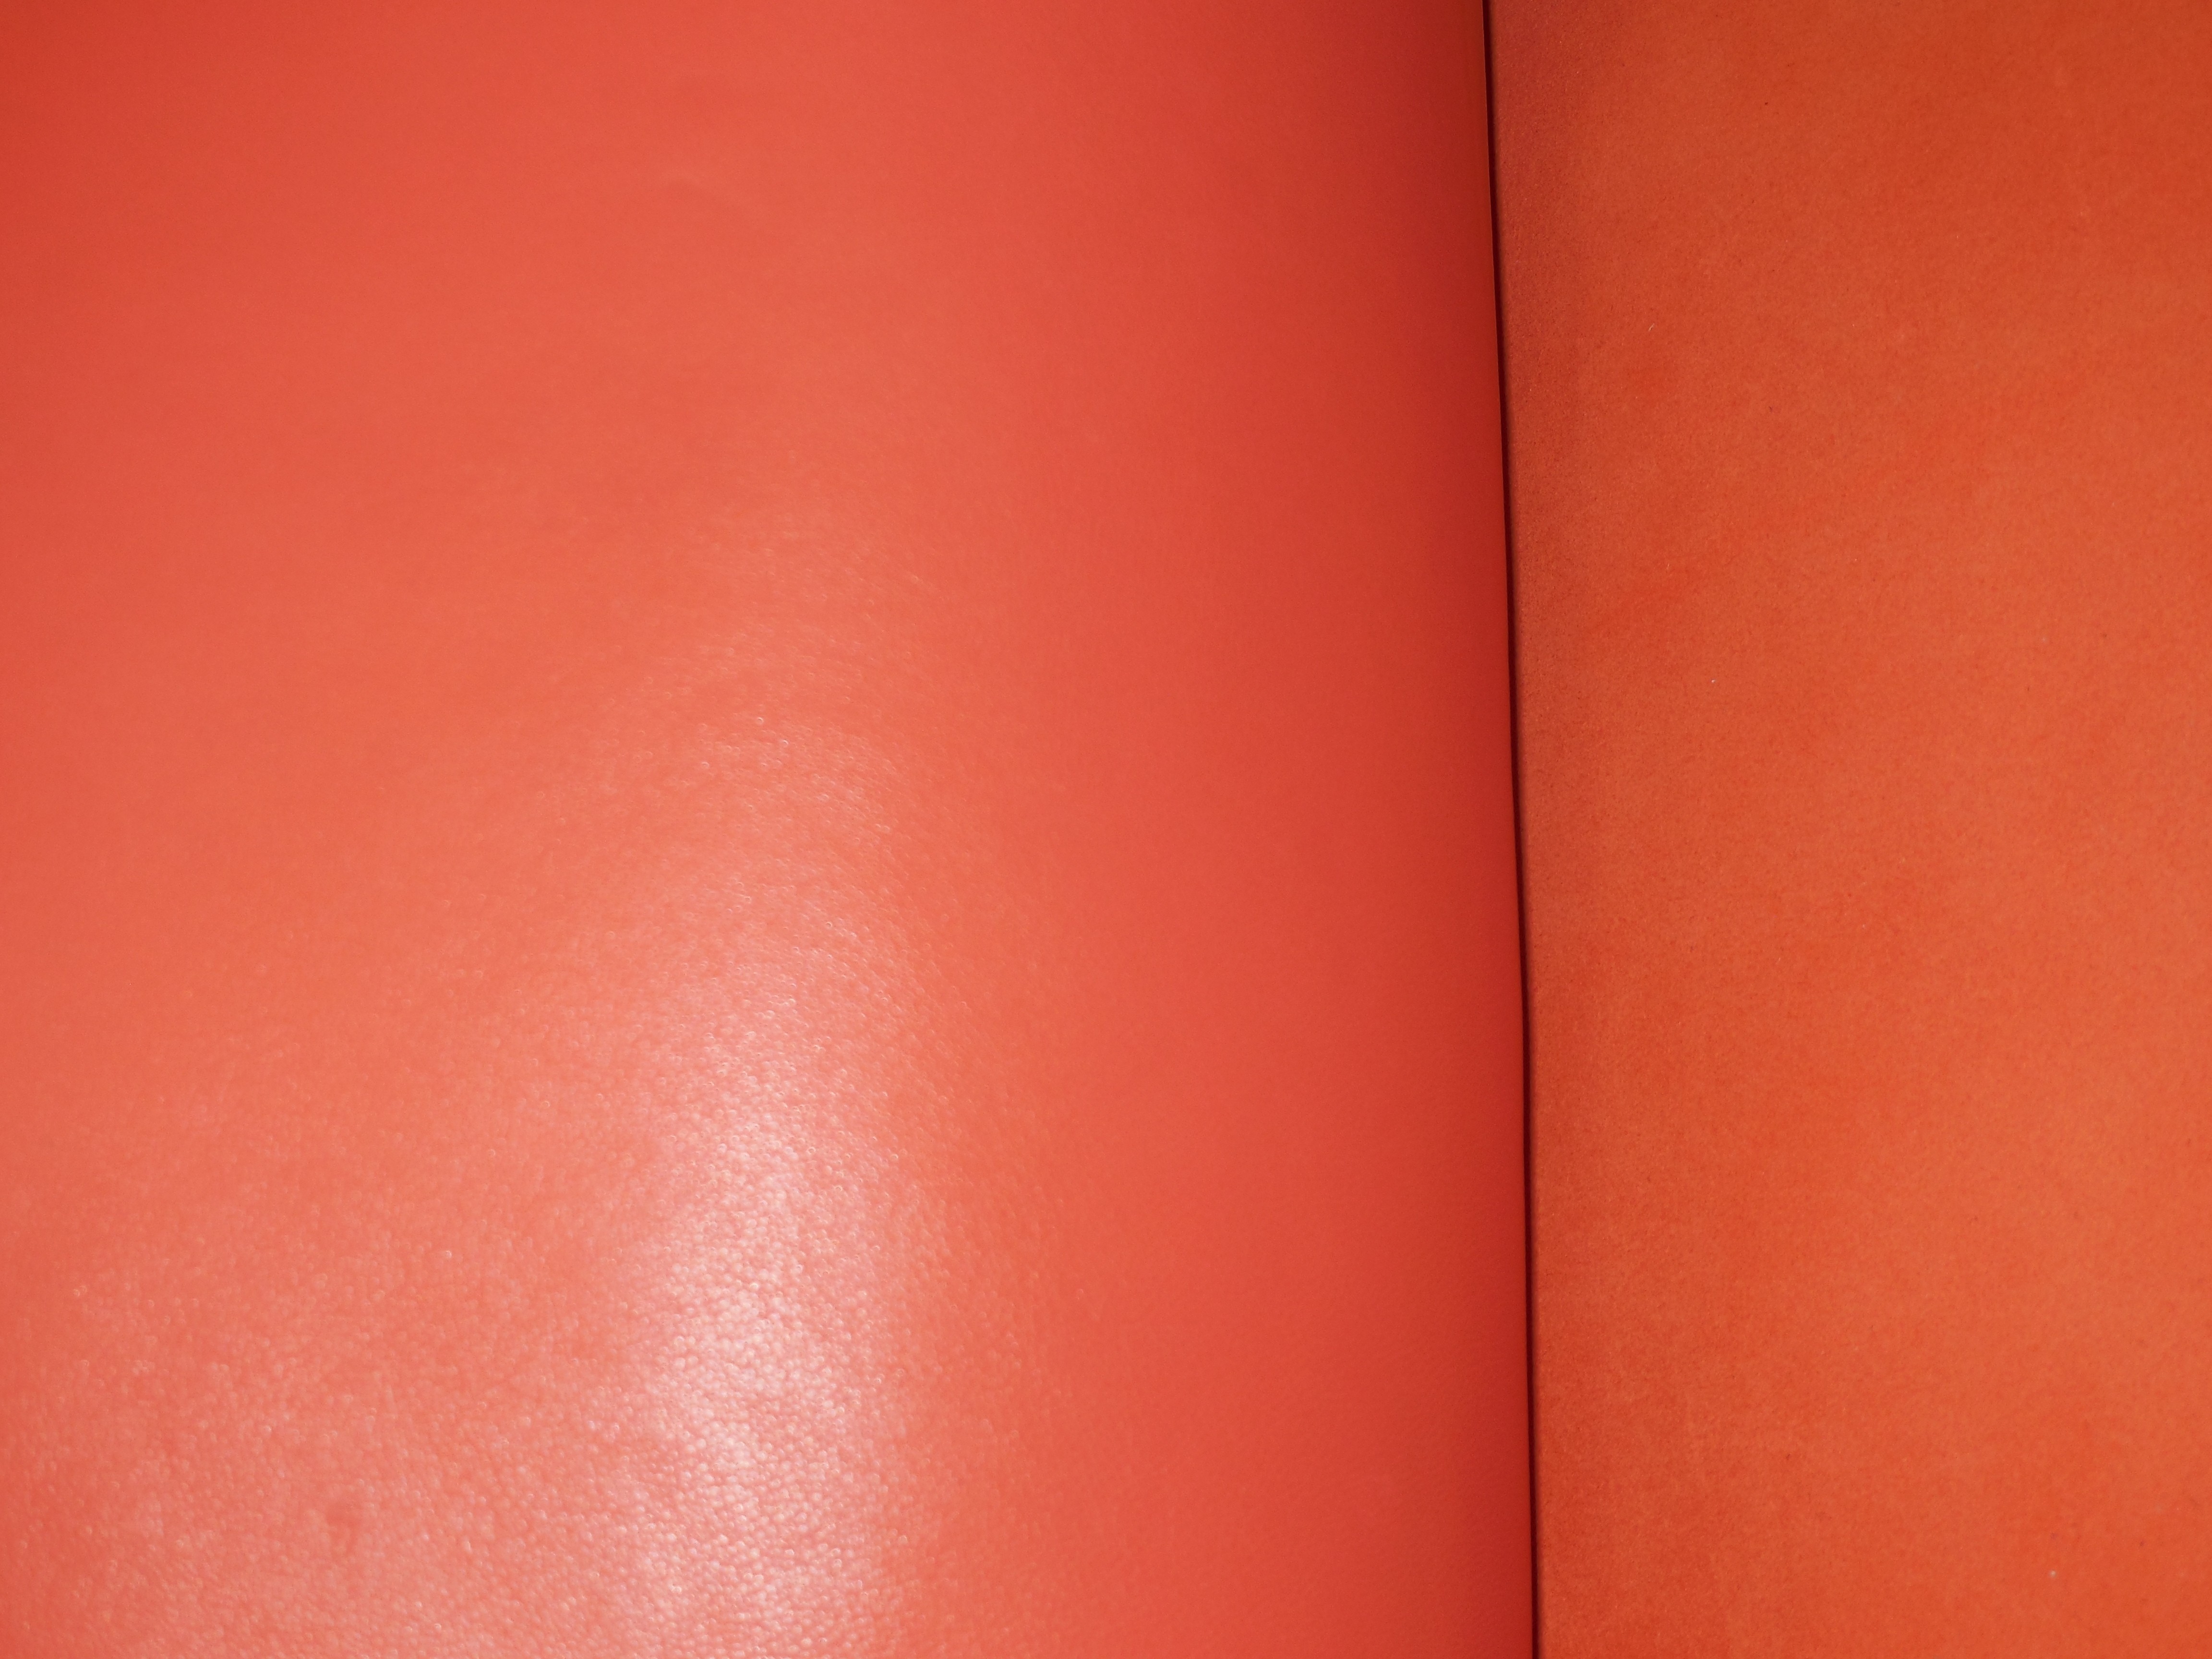 Sukienka ze skóry naturalnej pomarańczowa - spódnica ze skóry naturalnej pomarańczowa, żakiet ze skóry naturalnej pomarańczowy - skóry naturalne cienkie w Leather-design.eu